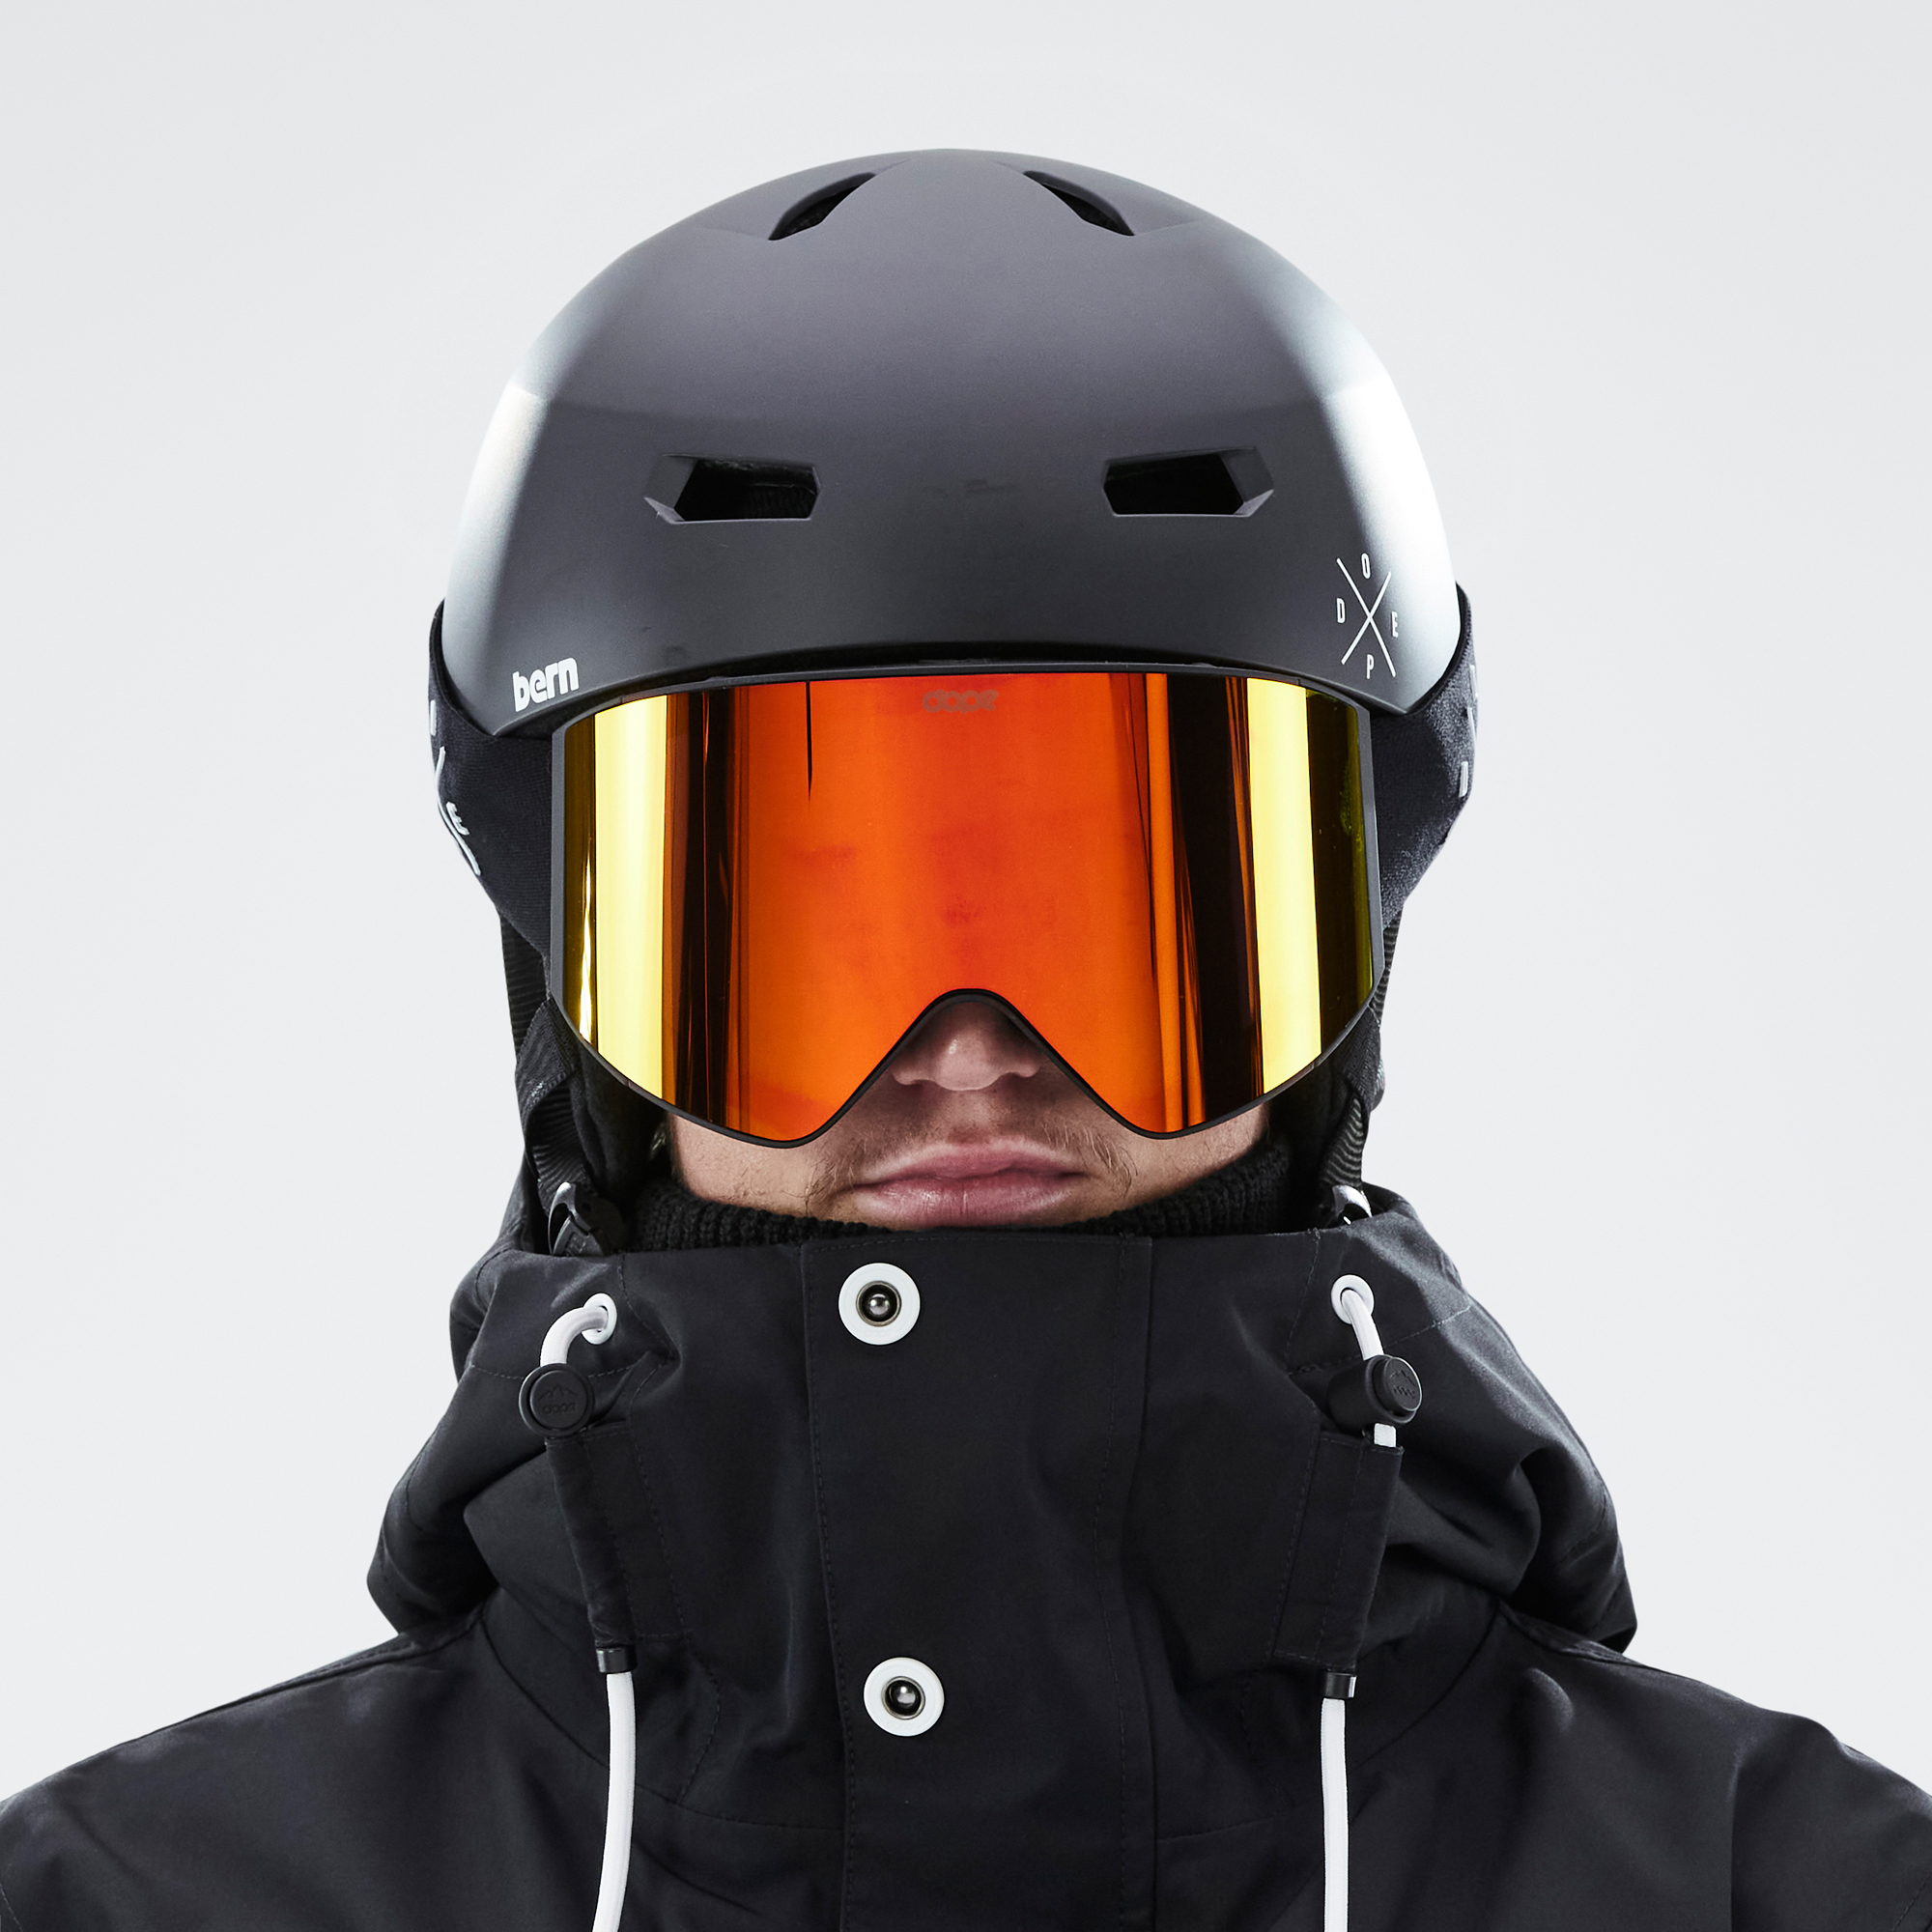 Dope Sight Gafas de esquí Hombre Black W/Black Red Mirror - Negro